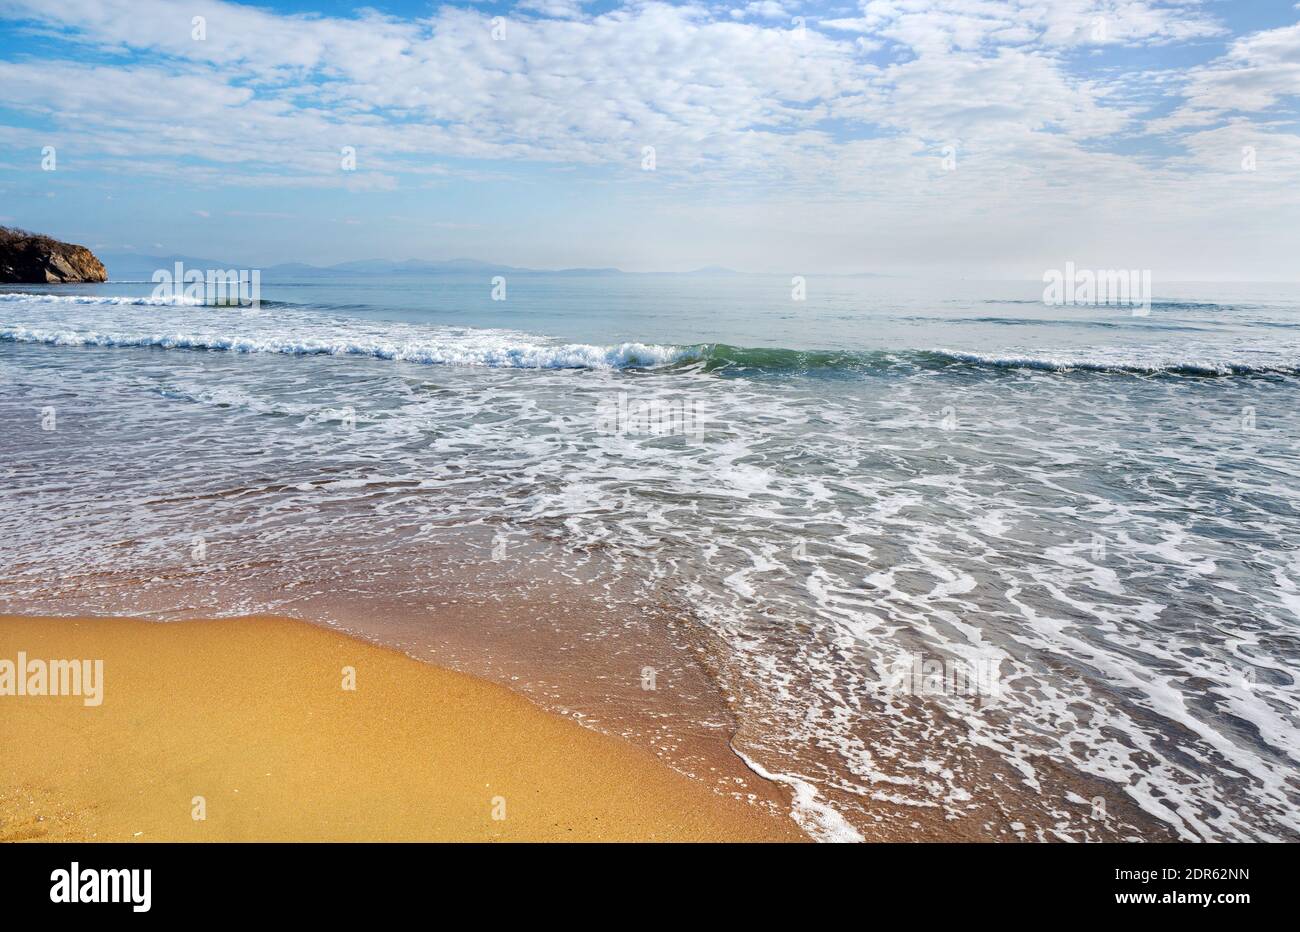 Onde del mare sulla spiaggia di sabbia con luce solare. Costa del mare sabbia bagnata. Composizione naturale. Foto Stock